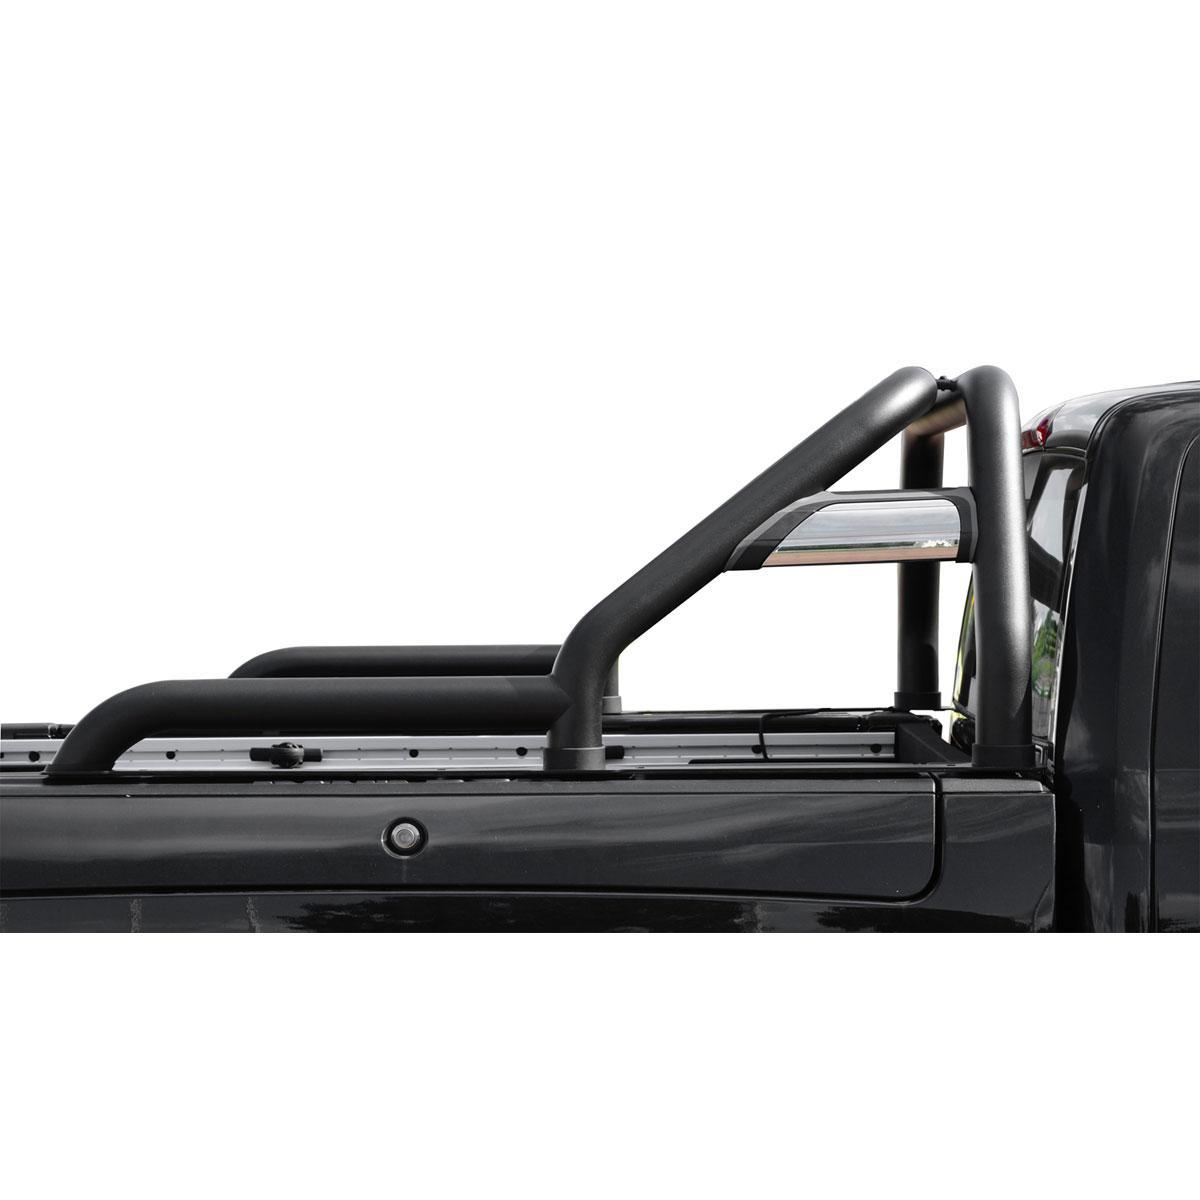 Stahl Rollbar 76mm mit Strebe schwarz beschichtet für Dodge RAM 2500 ab 2018